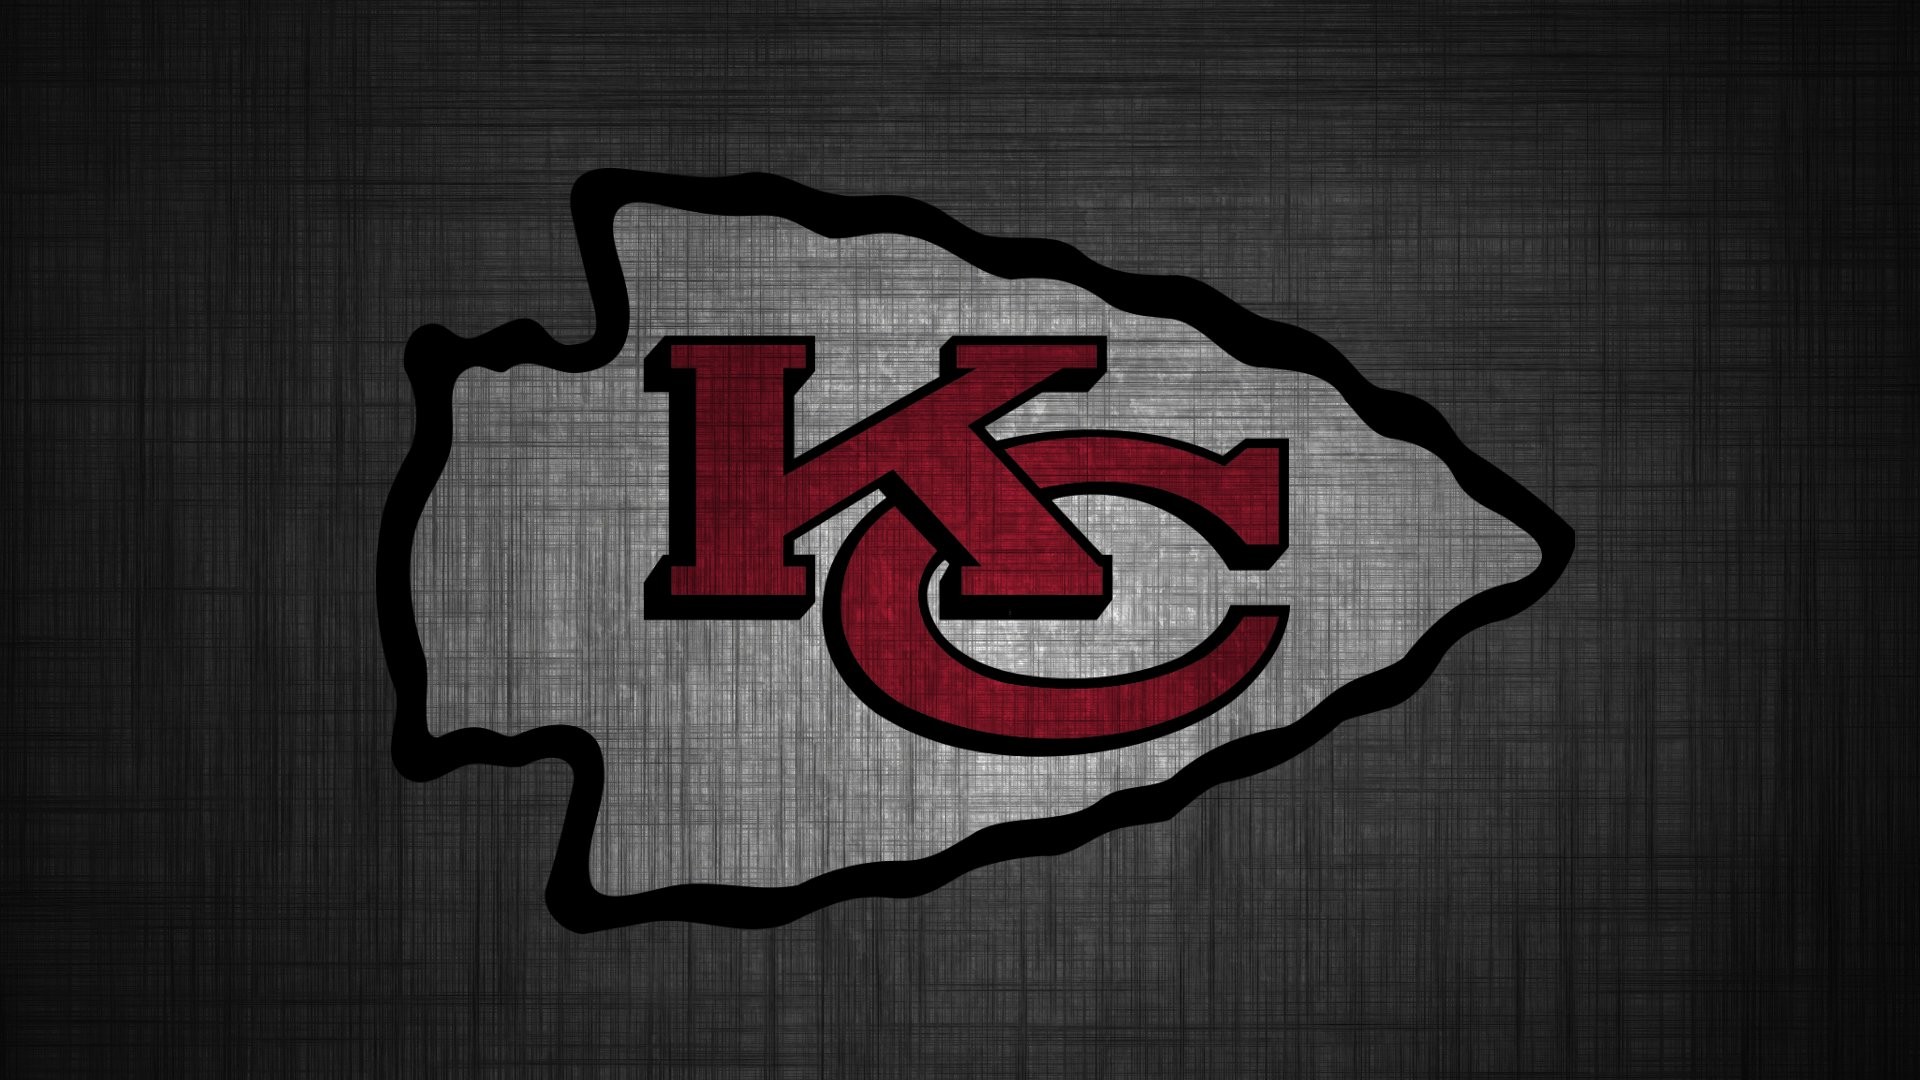 Hình nền Kansas City Chiefs - Hít thở không khí bóng đá NFL với những hình nền nghệ thuật hưởng dẫn về đội bóng Kansas City Chiefs. Ảnh nền sôi động, đậm chất thể thao với các hình ảnh của các cầu thủ điển trai, những pha bóng kinh điển và logo độc đáo của đội bóng. Hãy để nền máy tính của bạn trở nên sống động và ấn tượng hơn với những bức ảnh nền này!